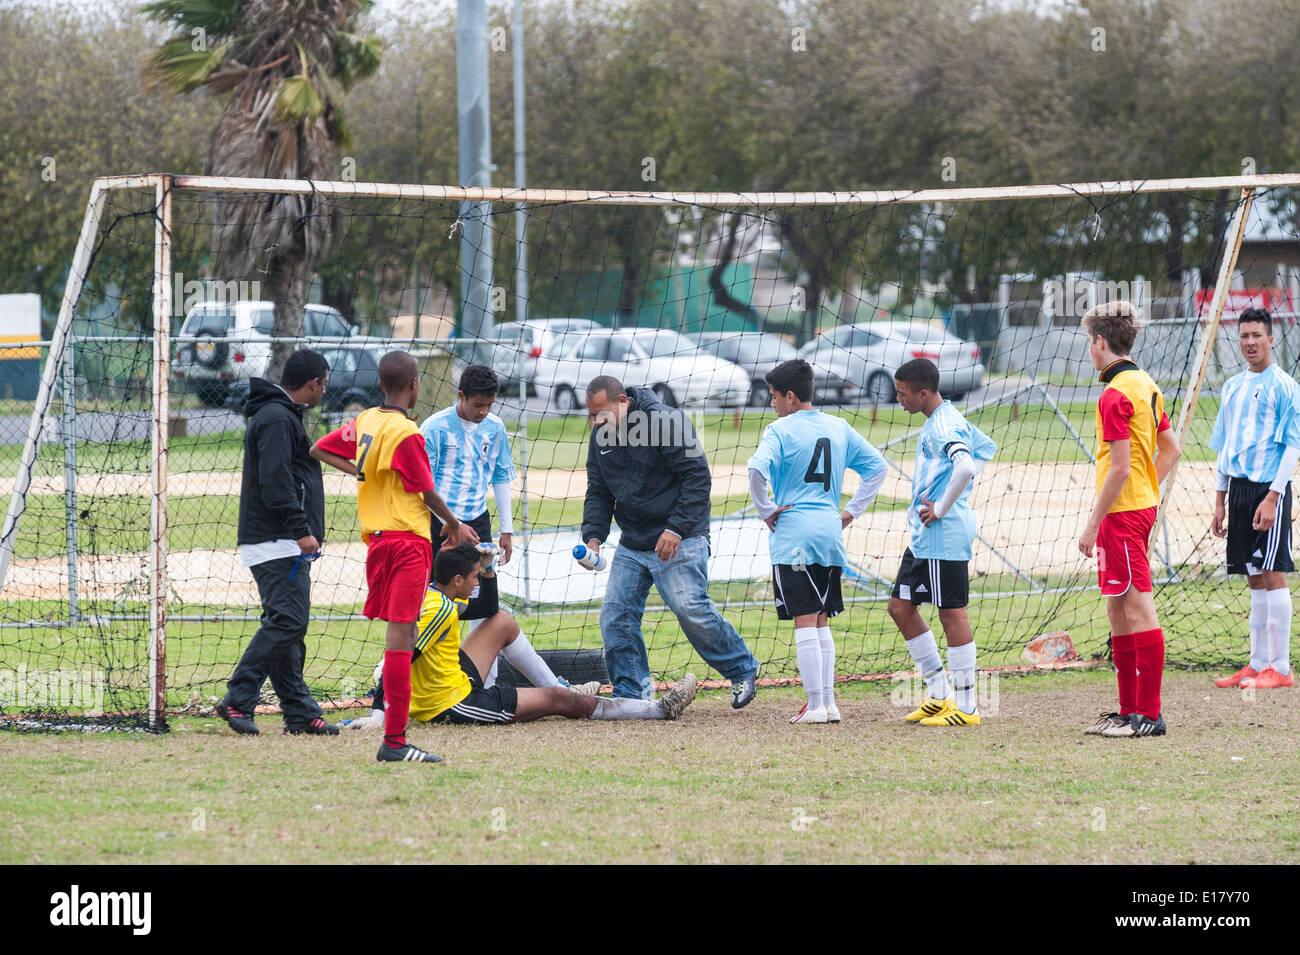 Portero de fútbol junior heridos que reciben tratamiento, Jugadores observando, Cape Town, Sudáfrica Foto de stock